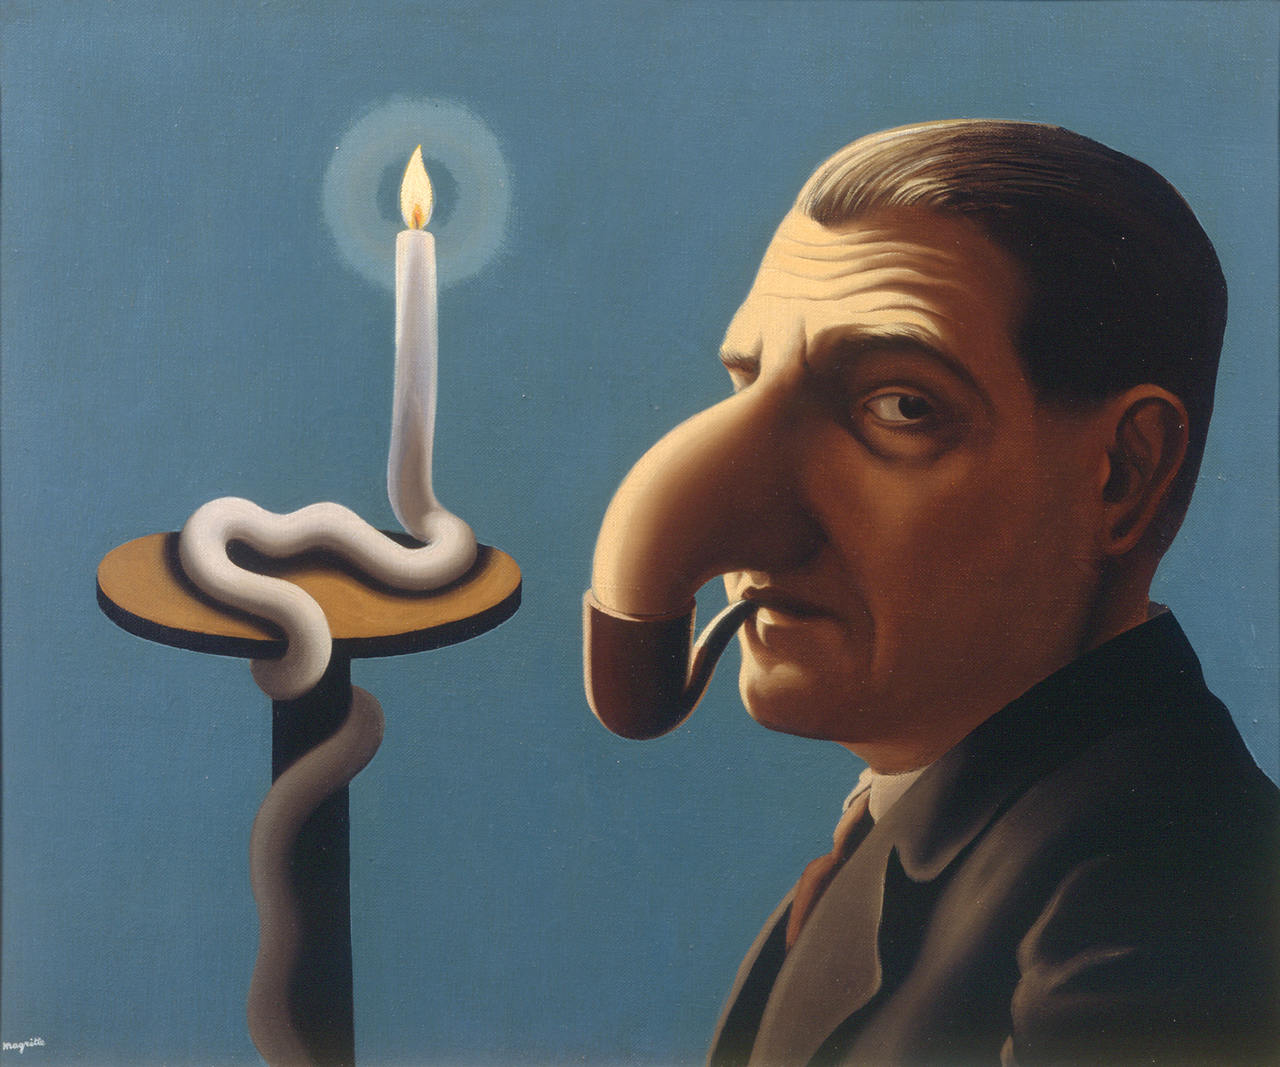 csm_Schirn_Presse_Magritte_La_lampe_philosophique_1936_557d6c187d.jpg